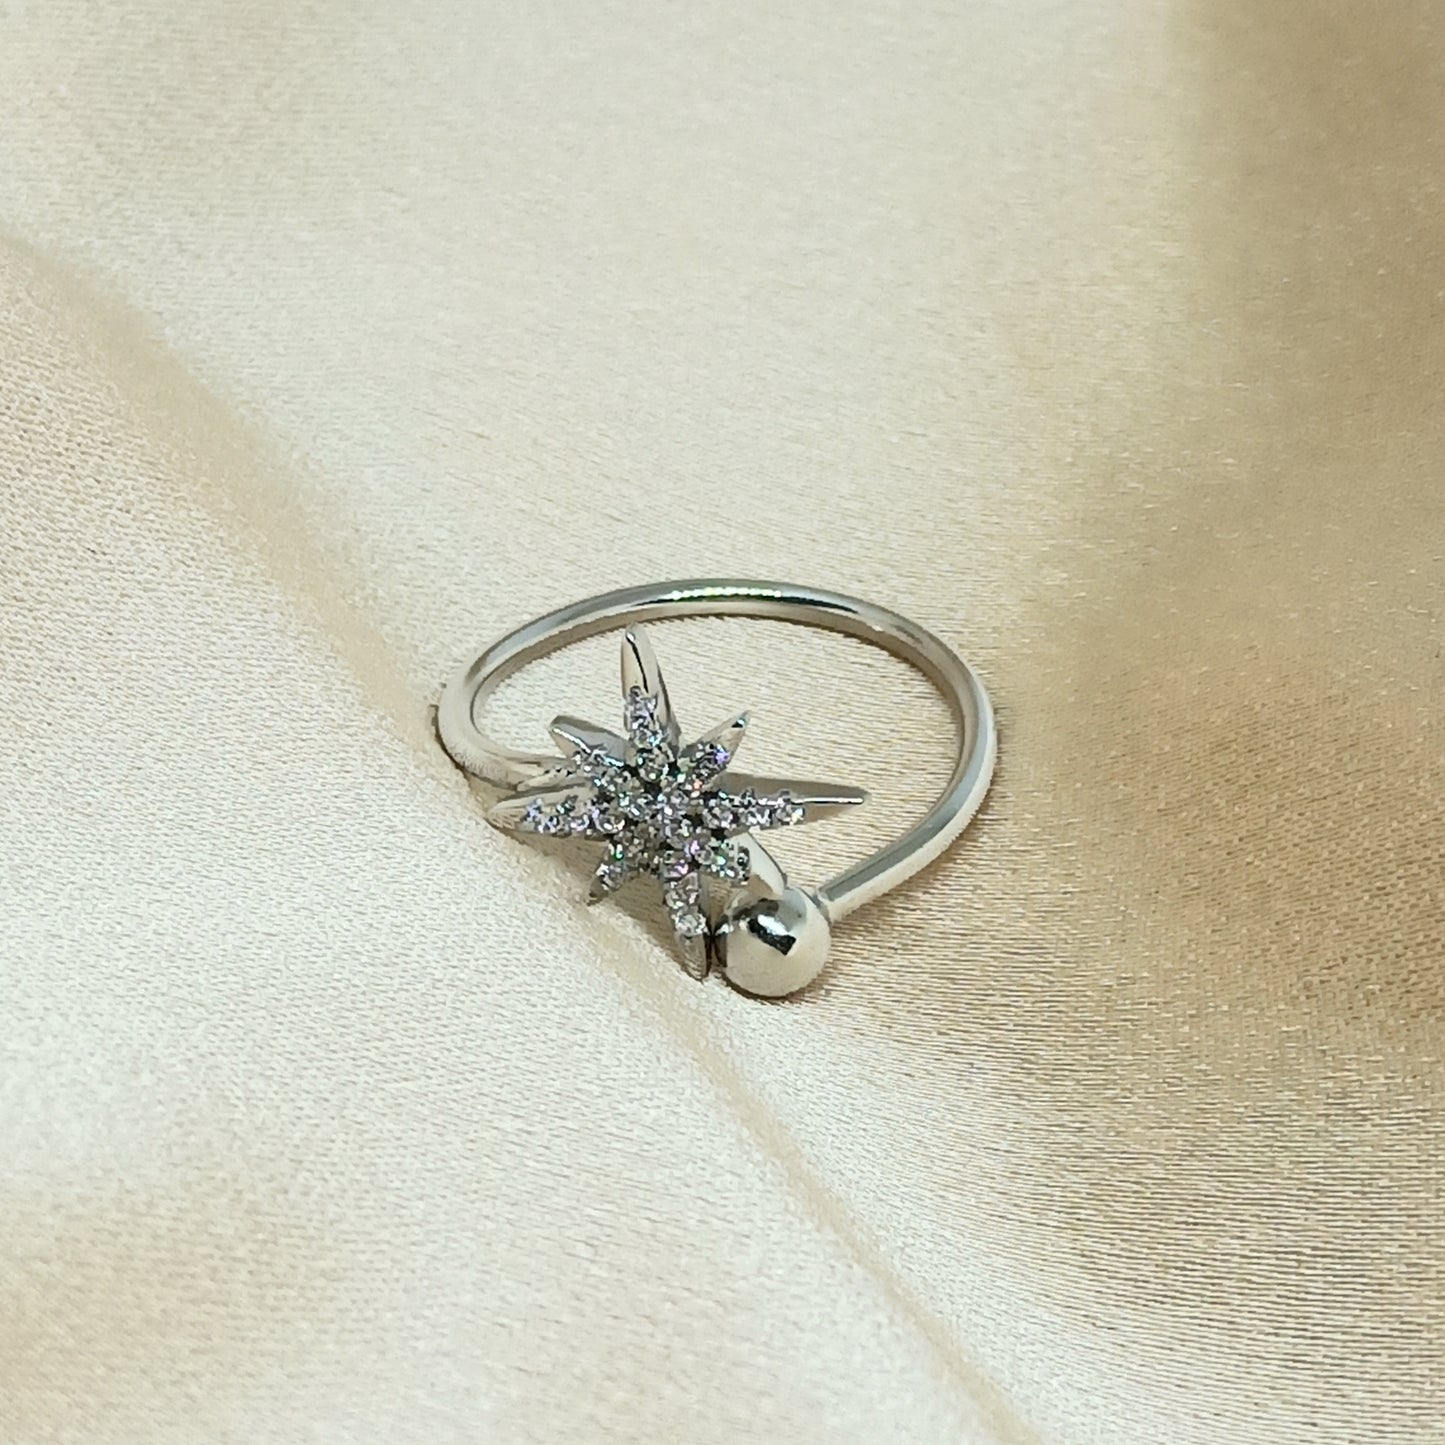 KEJORA - 925 Sterling Silver North Star Ring (Adjustable)